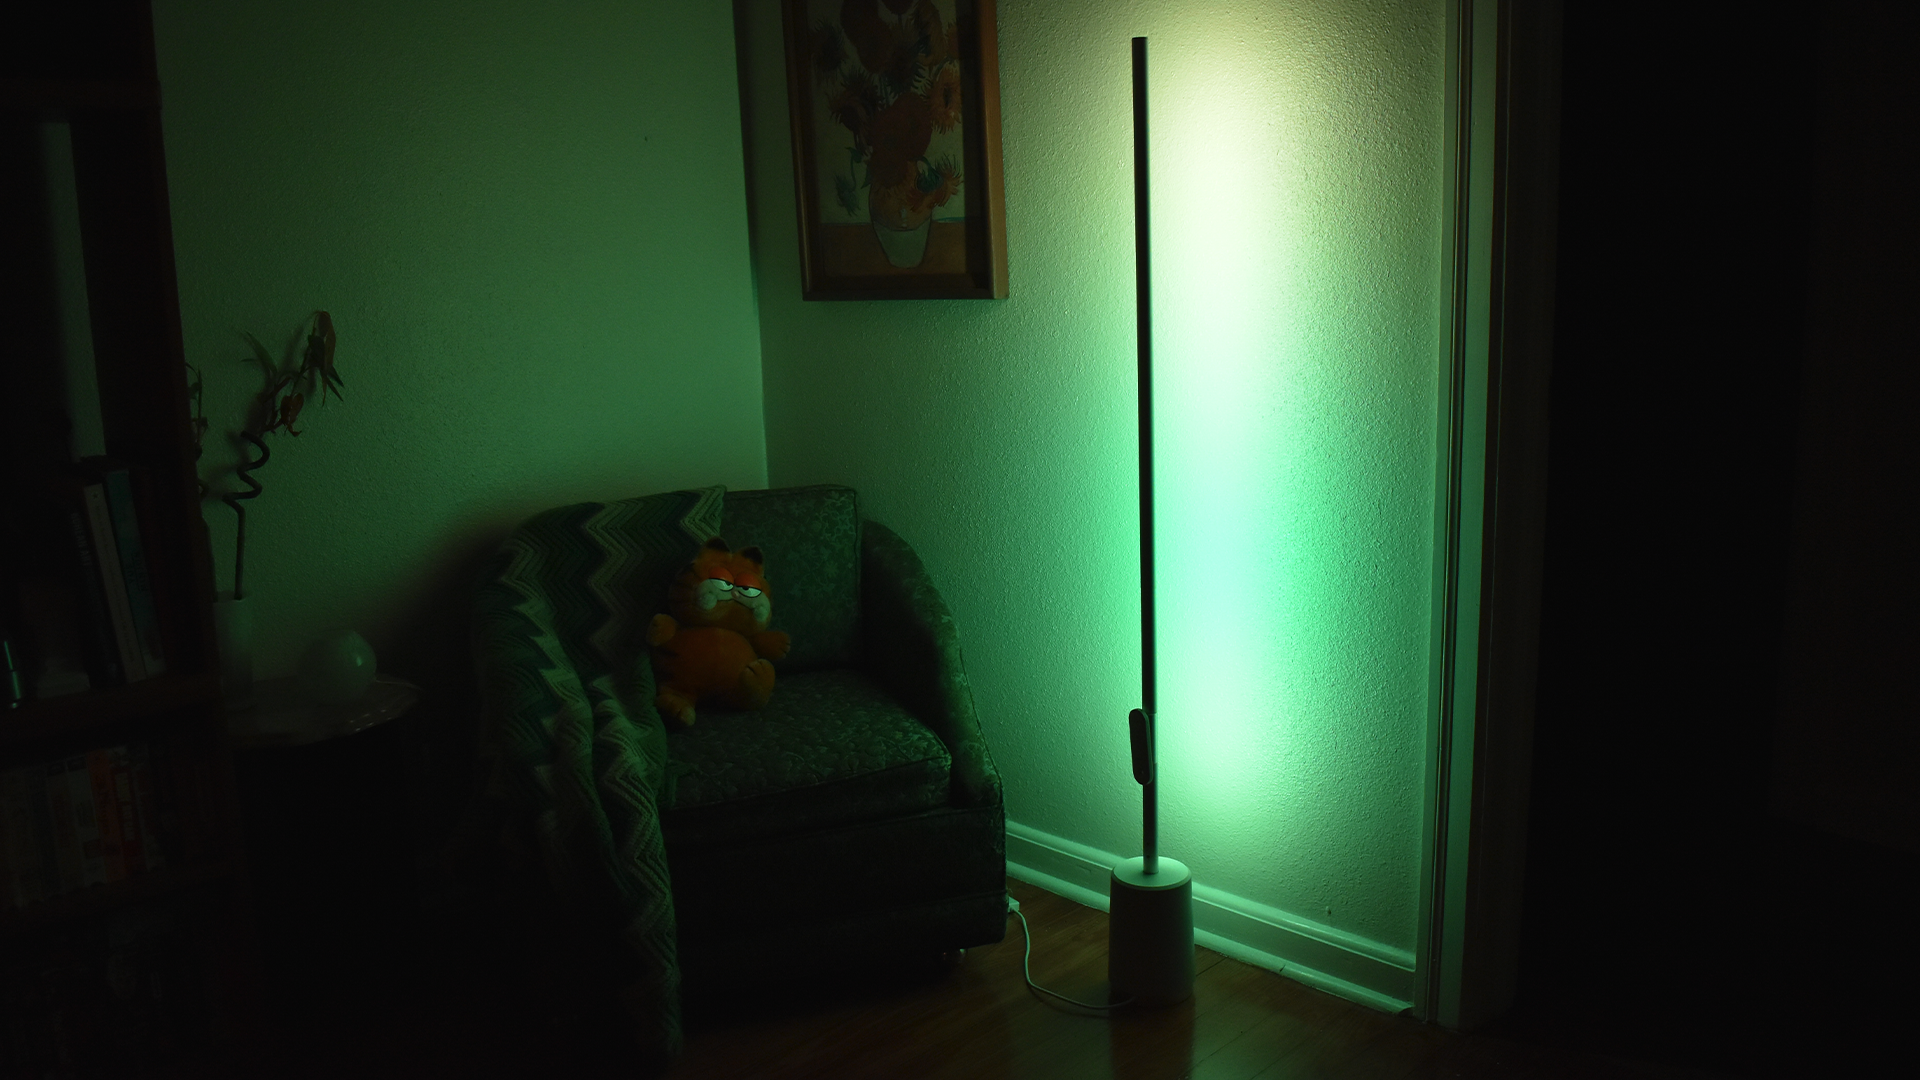 Lyra-lampan kastar ett grönt och gult ljus.